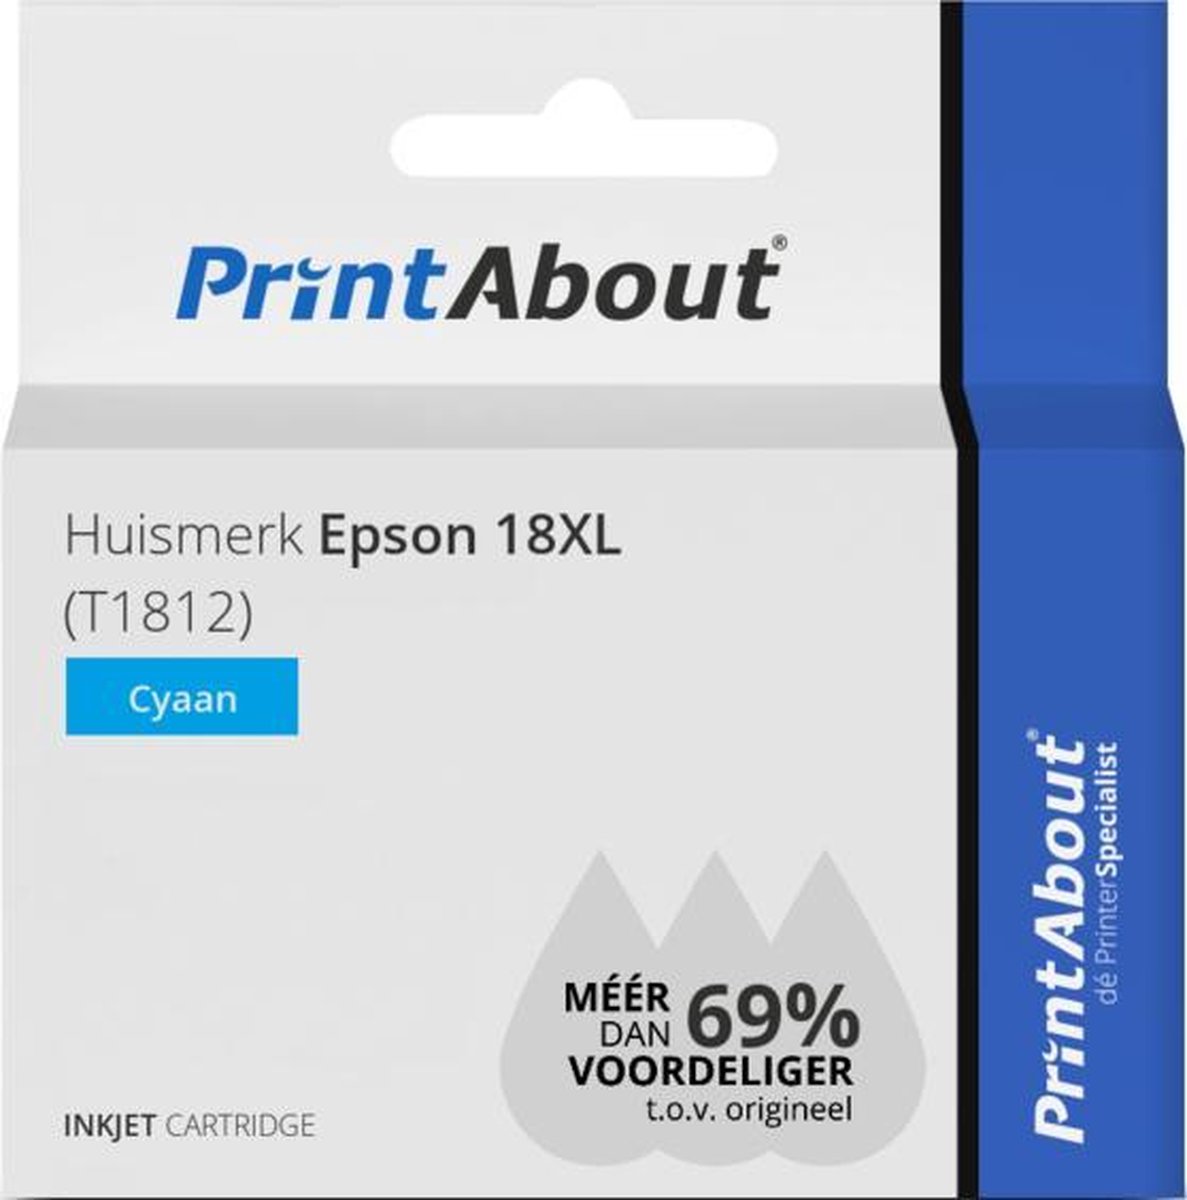 PrintAbout Huismerk Epson 18XL (T1812) Inktcartridge Cyaan Hoge capaciteit